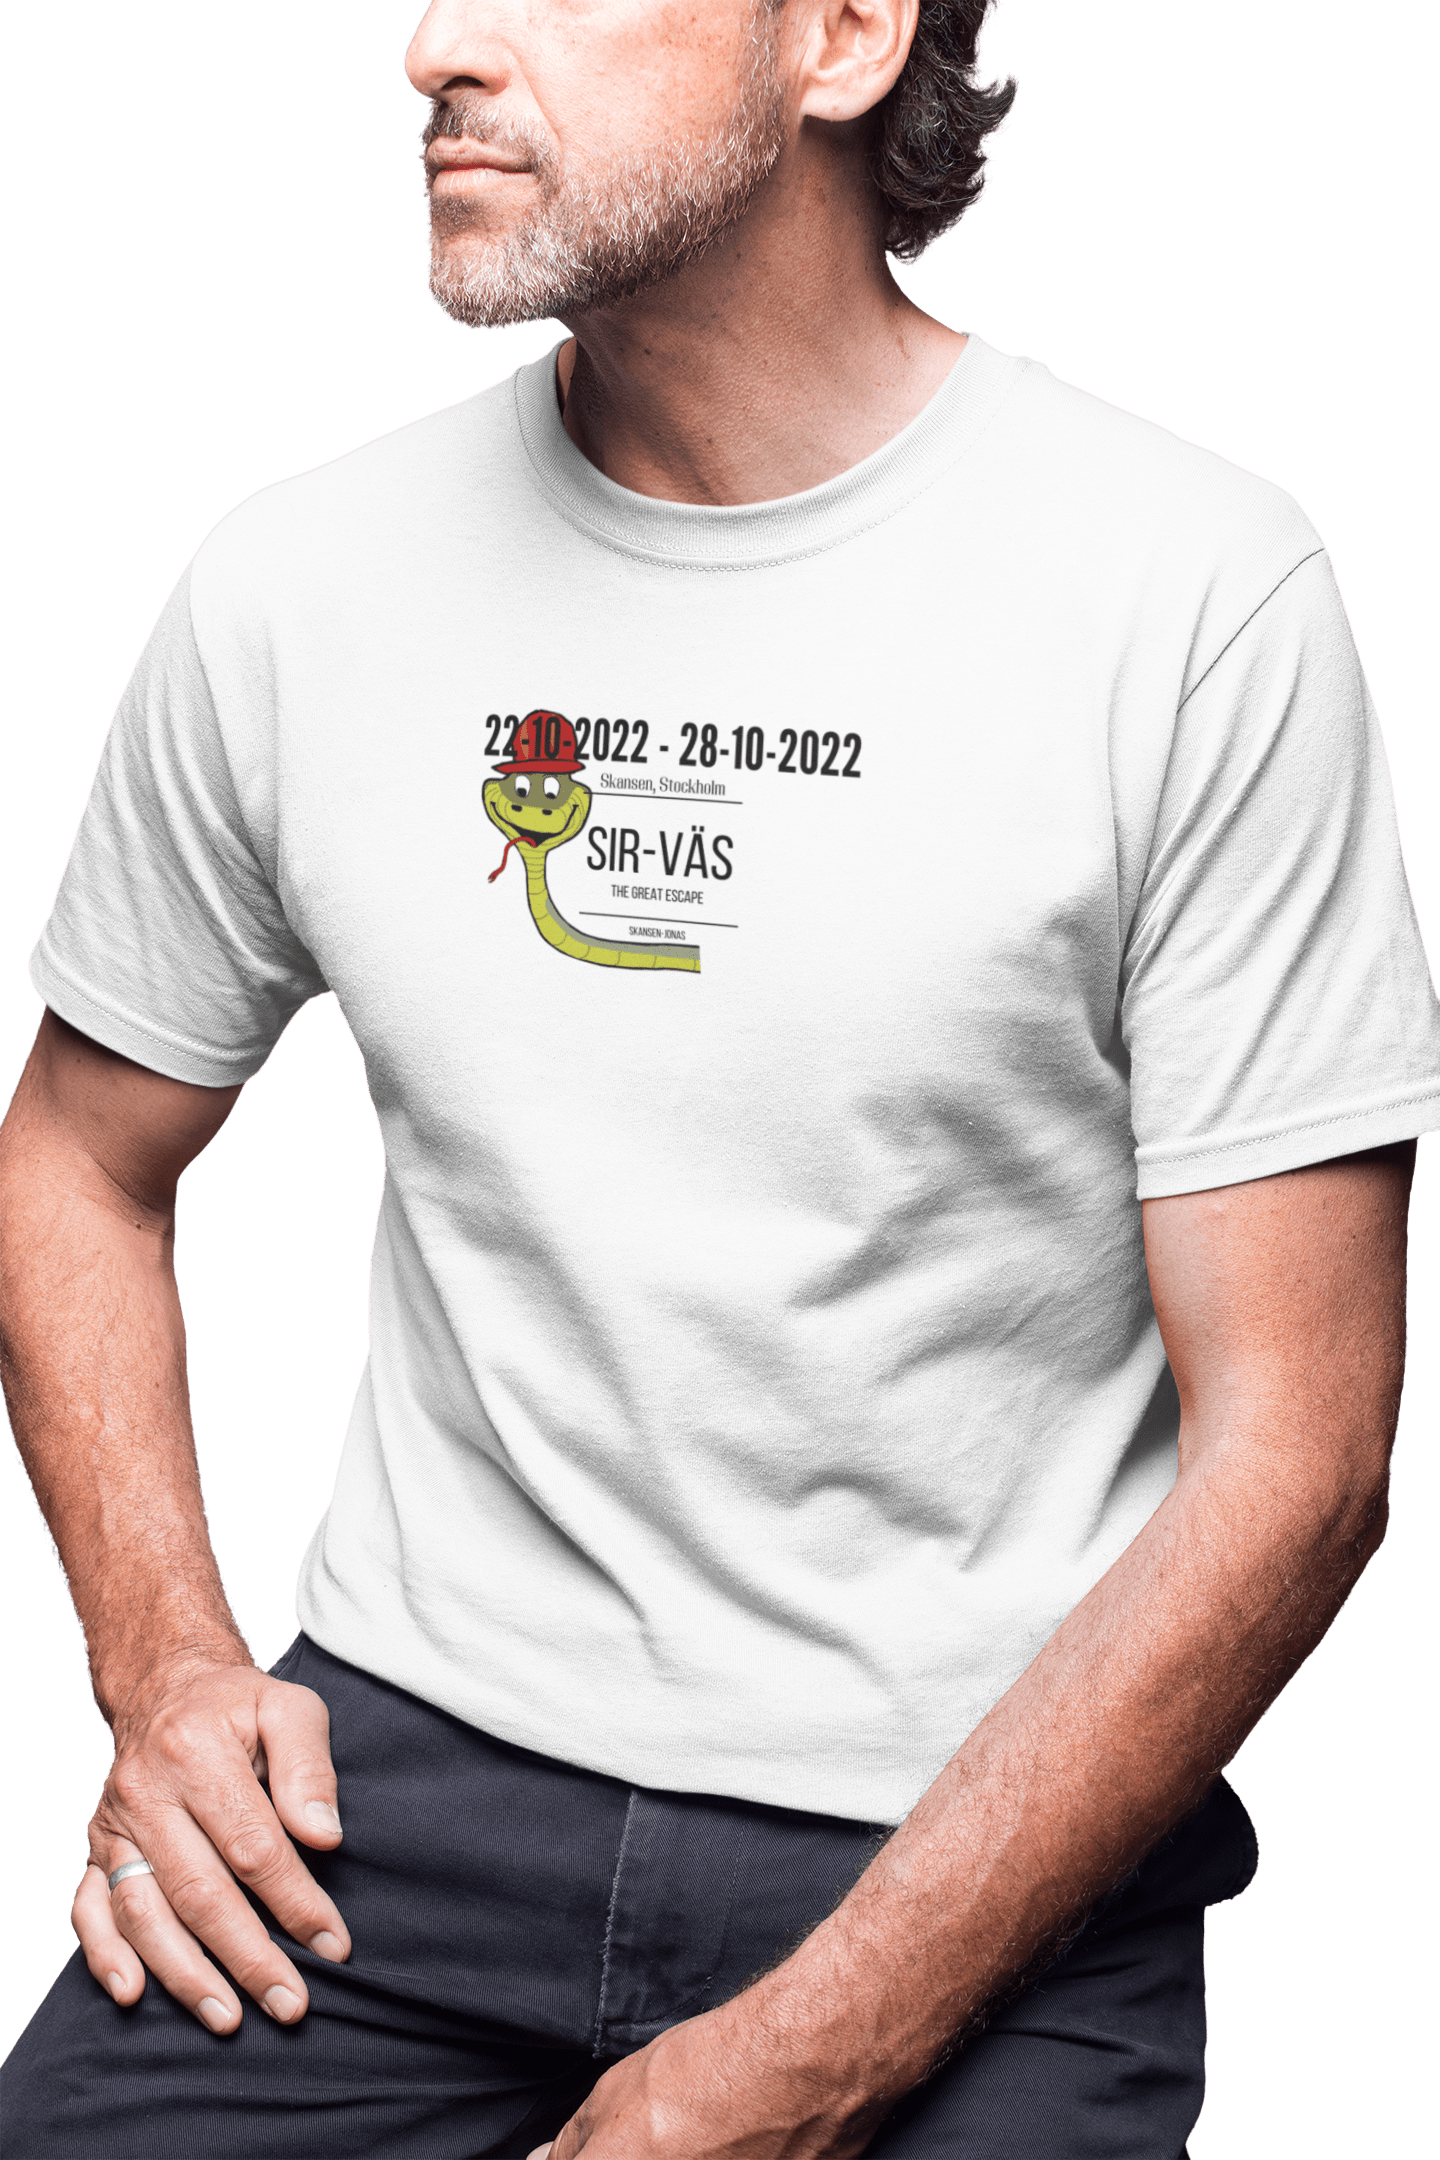 Sir-Väs - T-shirt 